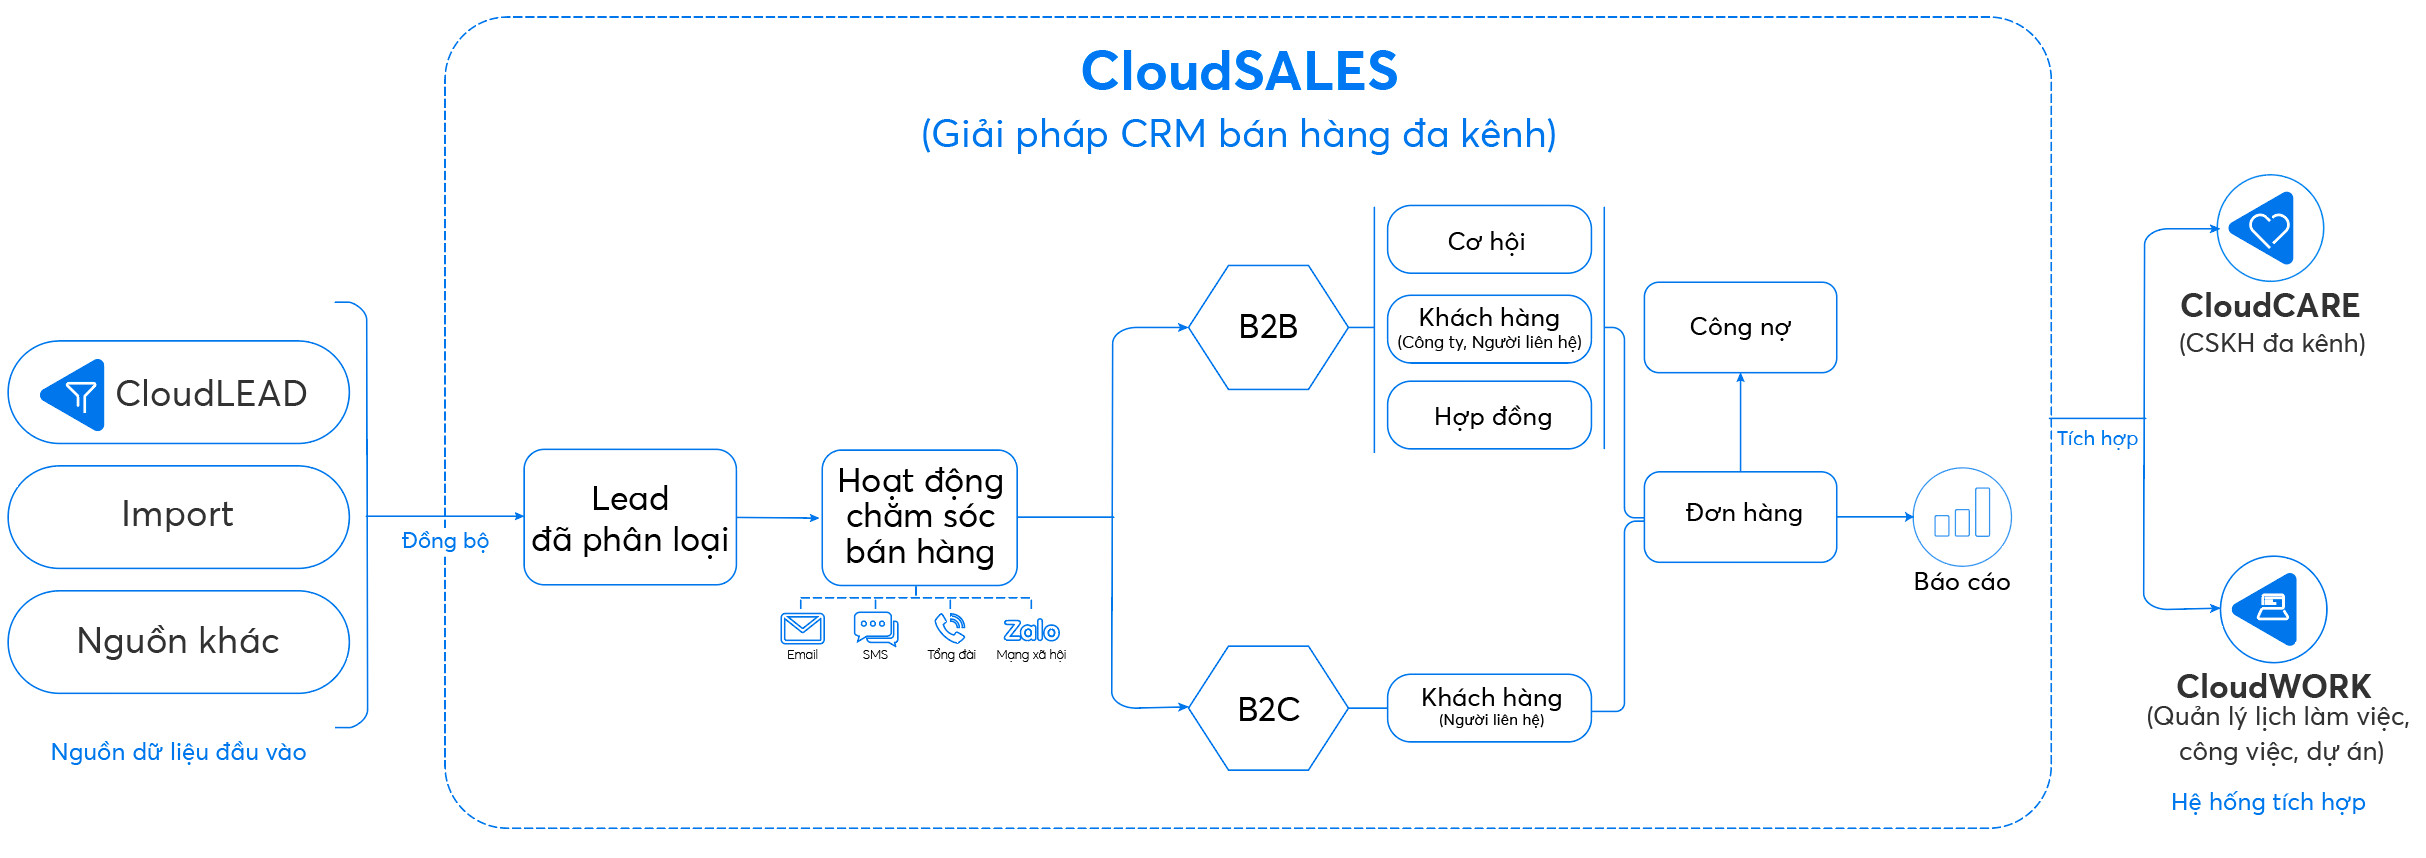 Quy trình bán hàng chuyên nghiệp bằng CloudSALES